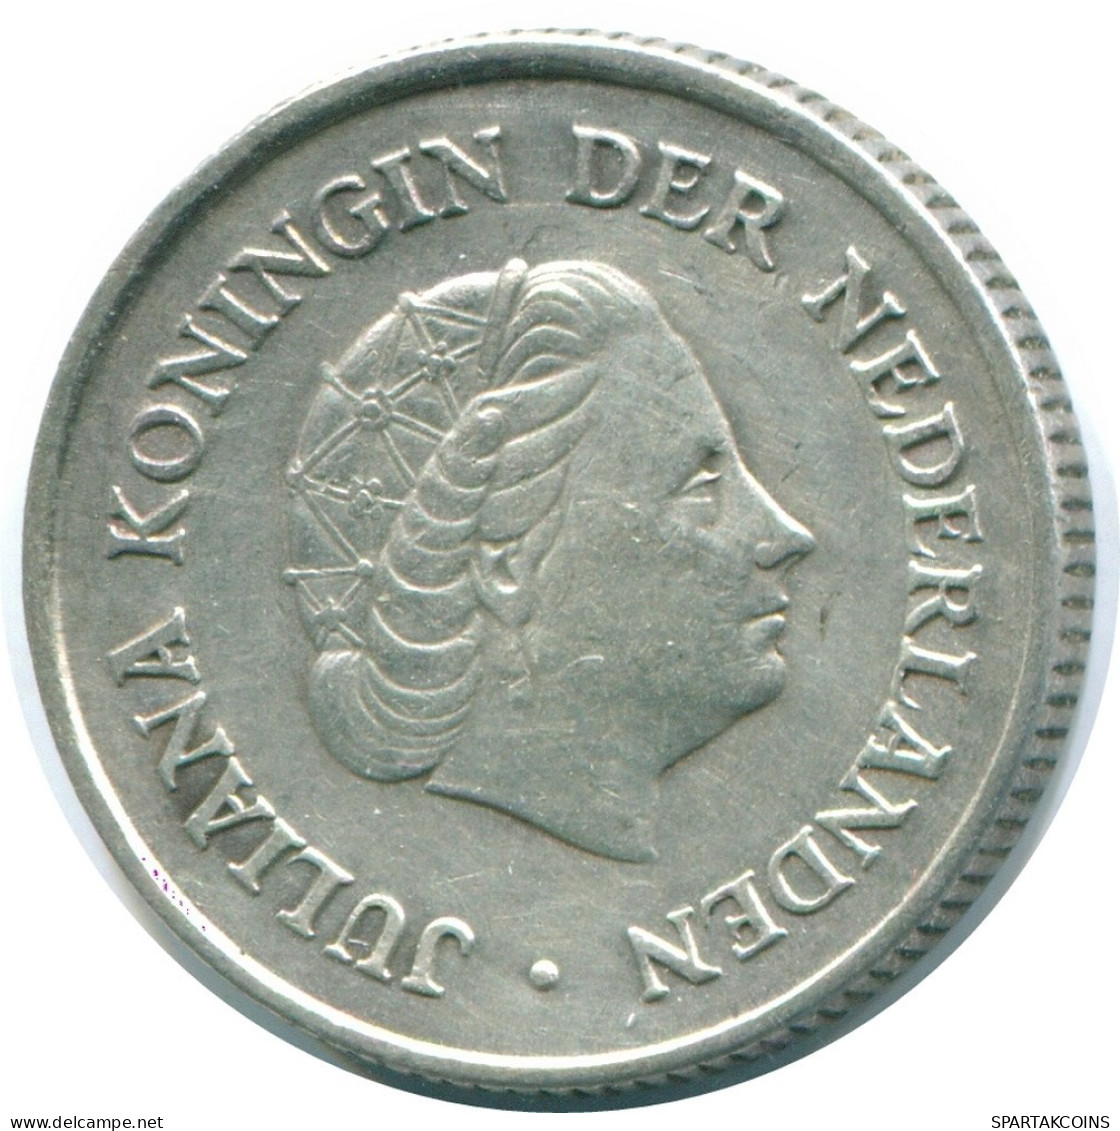 1/4 GULDEN 1965 NIEDERLÄNDISCHE ANTILLEN SILBER Koloniale Münze #NL11322.4.D.A - Niederländische Antillen